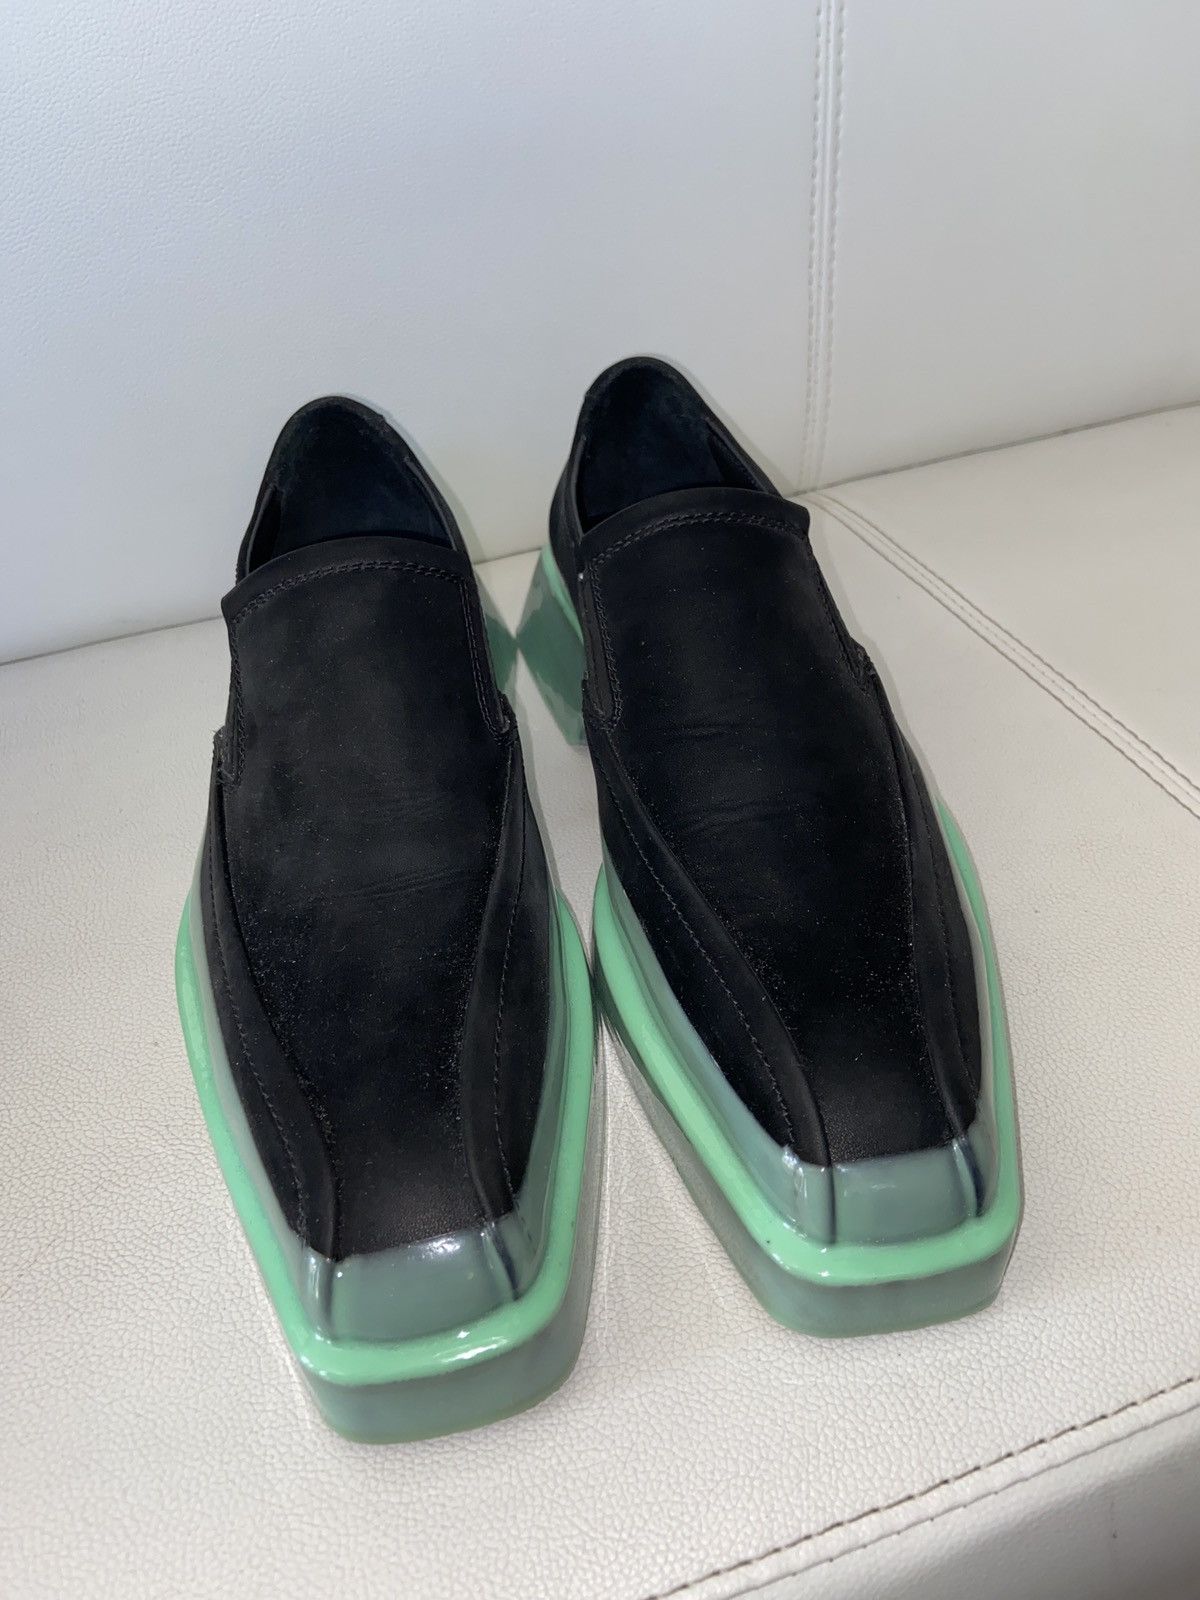 Designer Both Paris Gang Loafer green/black size 42 | Grailed